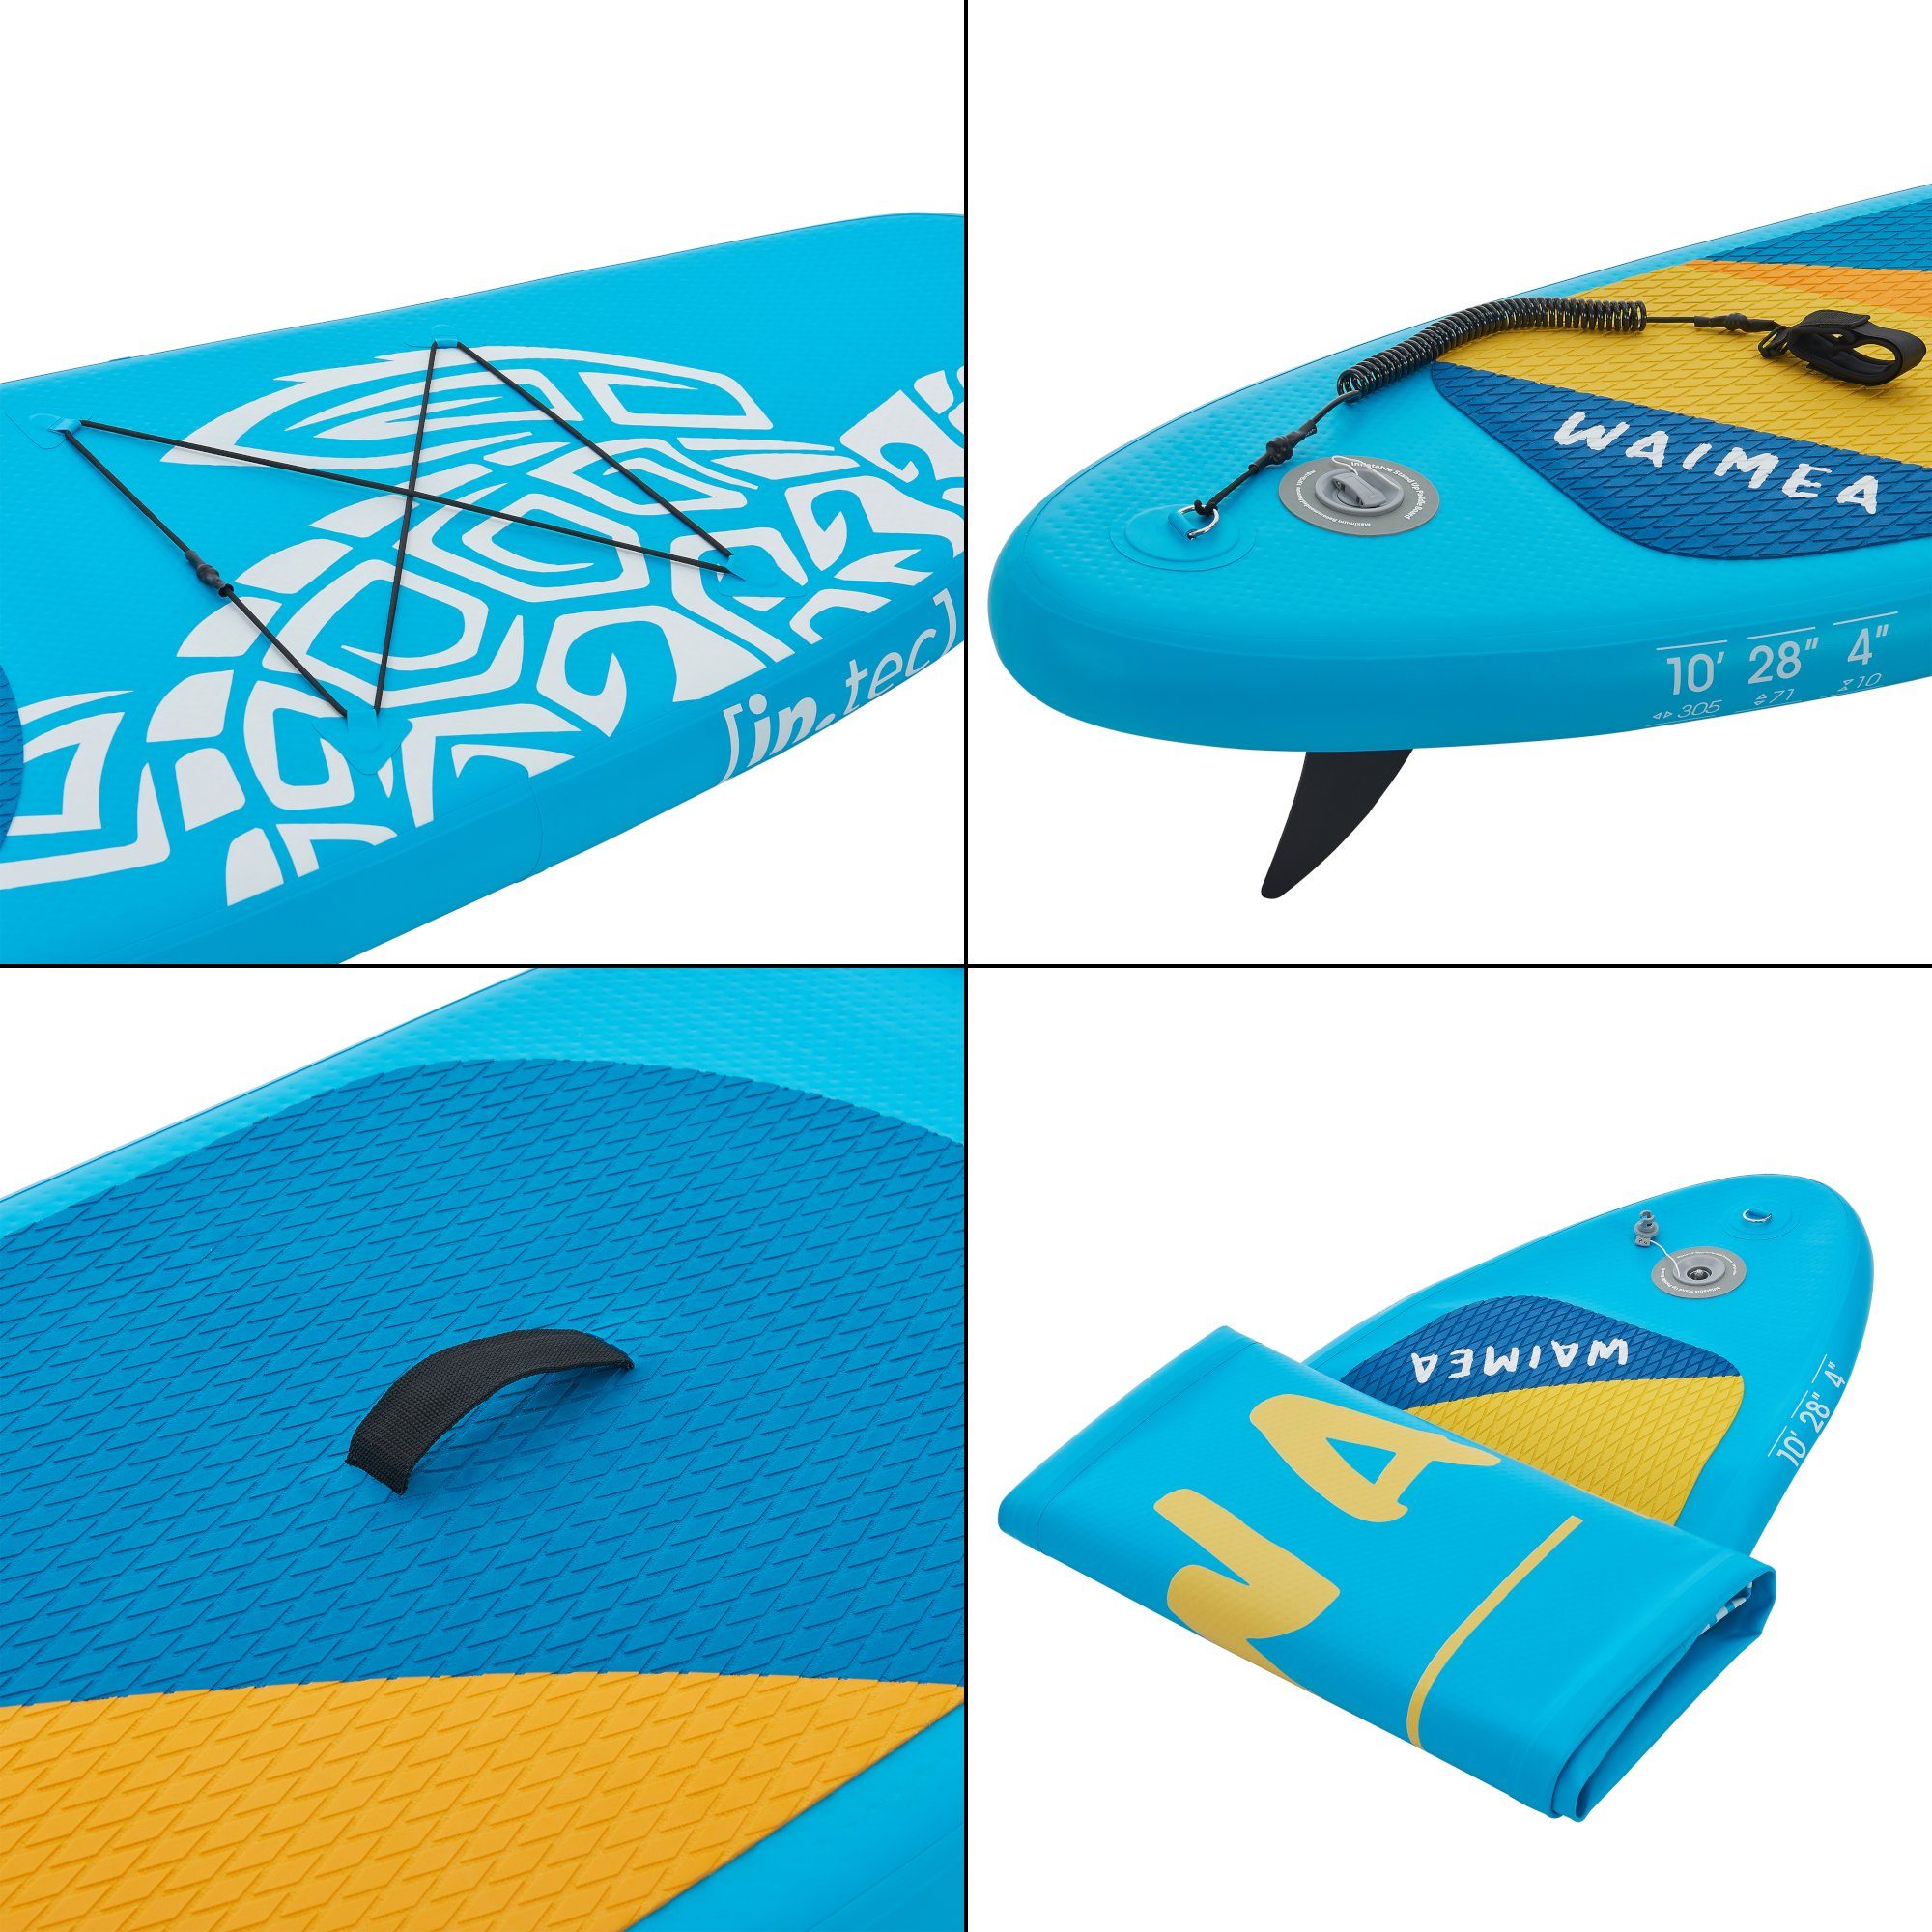 71 10 305 in.tec cm Paddleboard x »Waimea« SUP-Board, x Blau